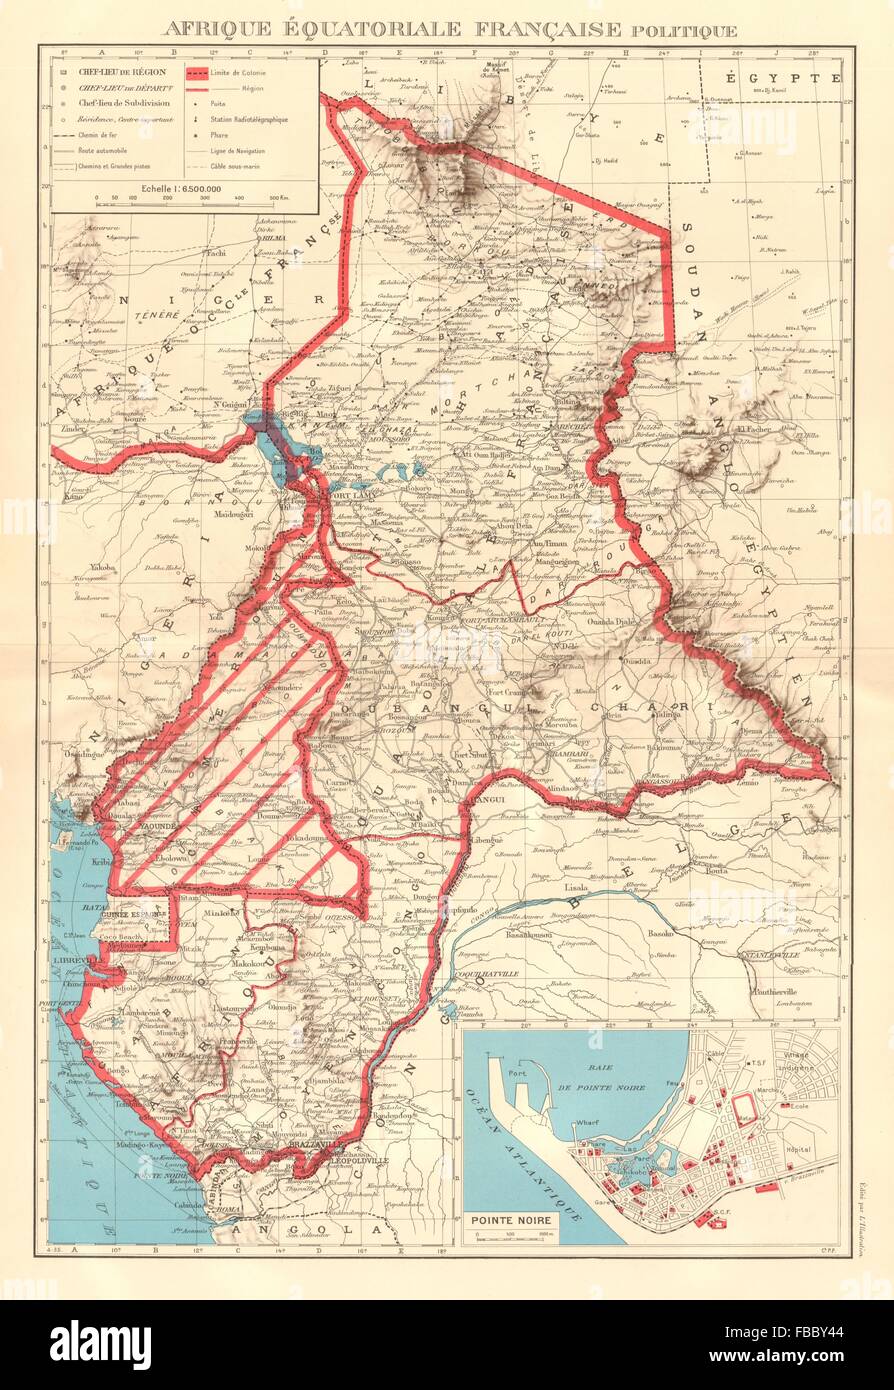 Africa Equatoriale Francese Afrique équatoriale Française Pointe Noire 1938 Mappa Foto Stock 0616